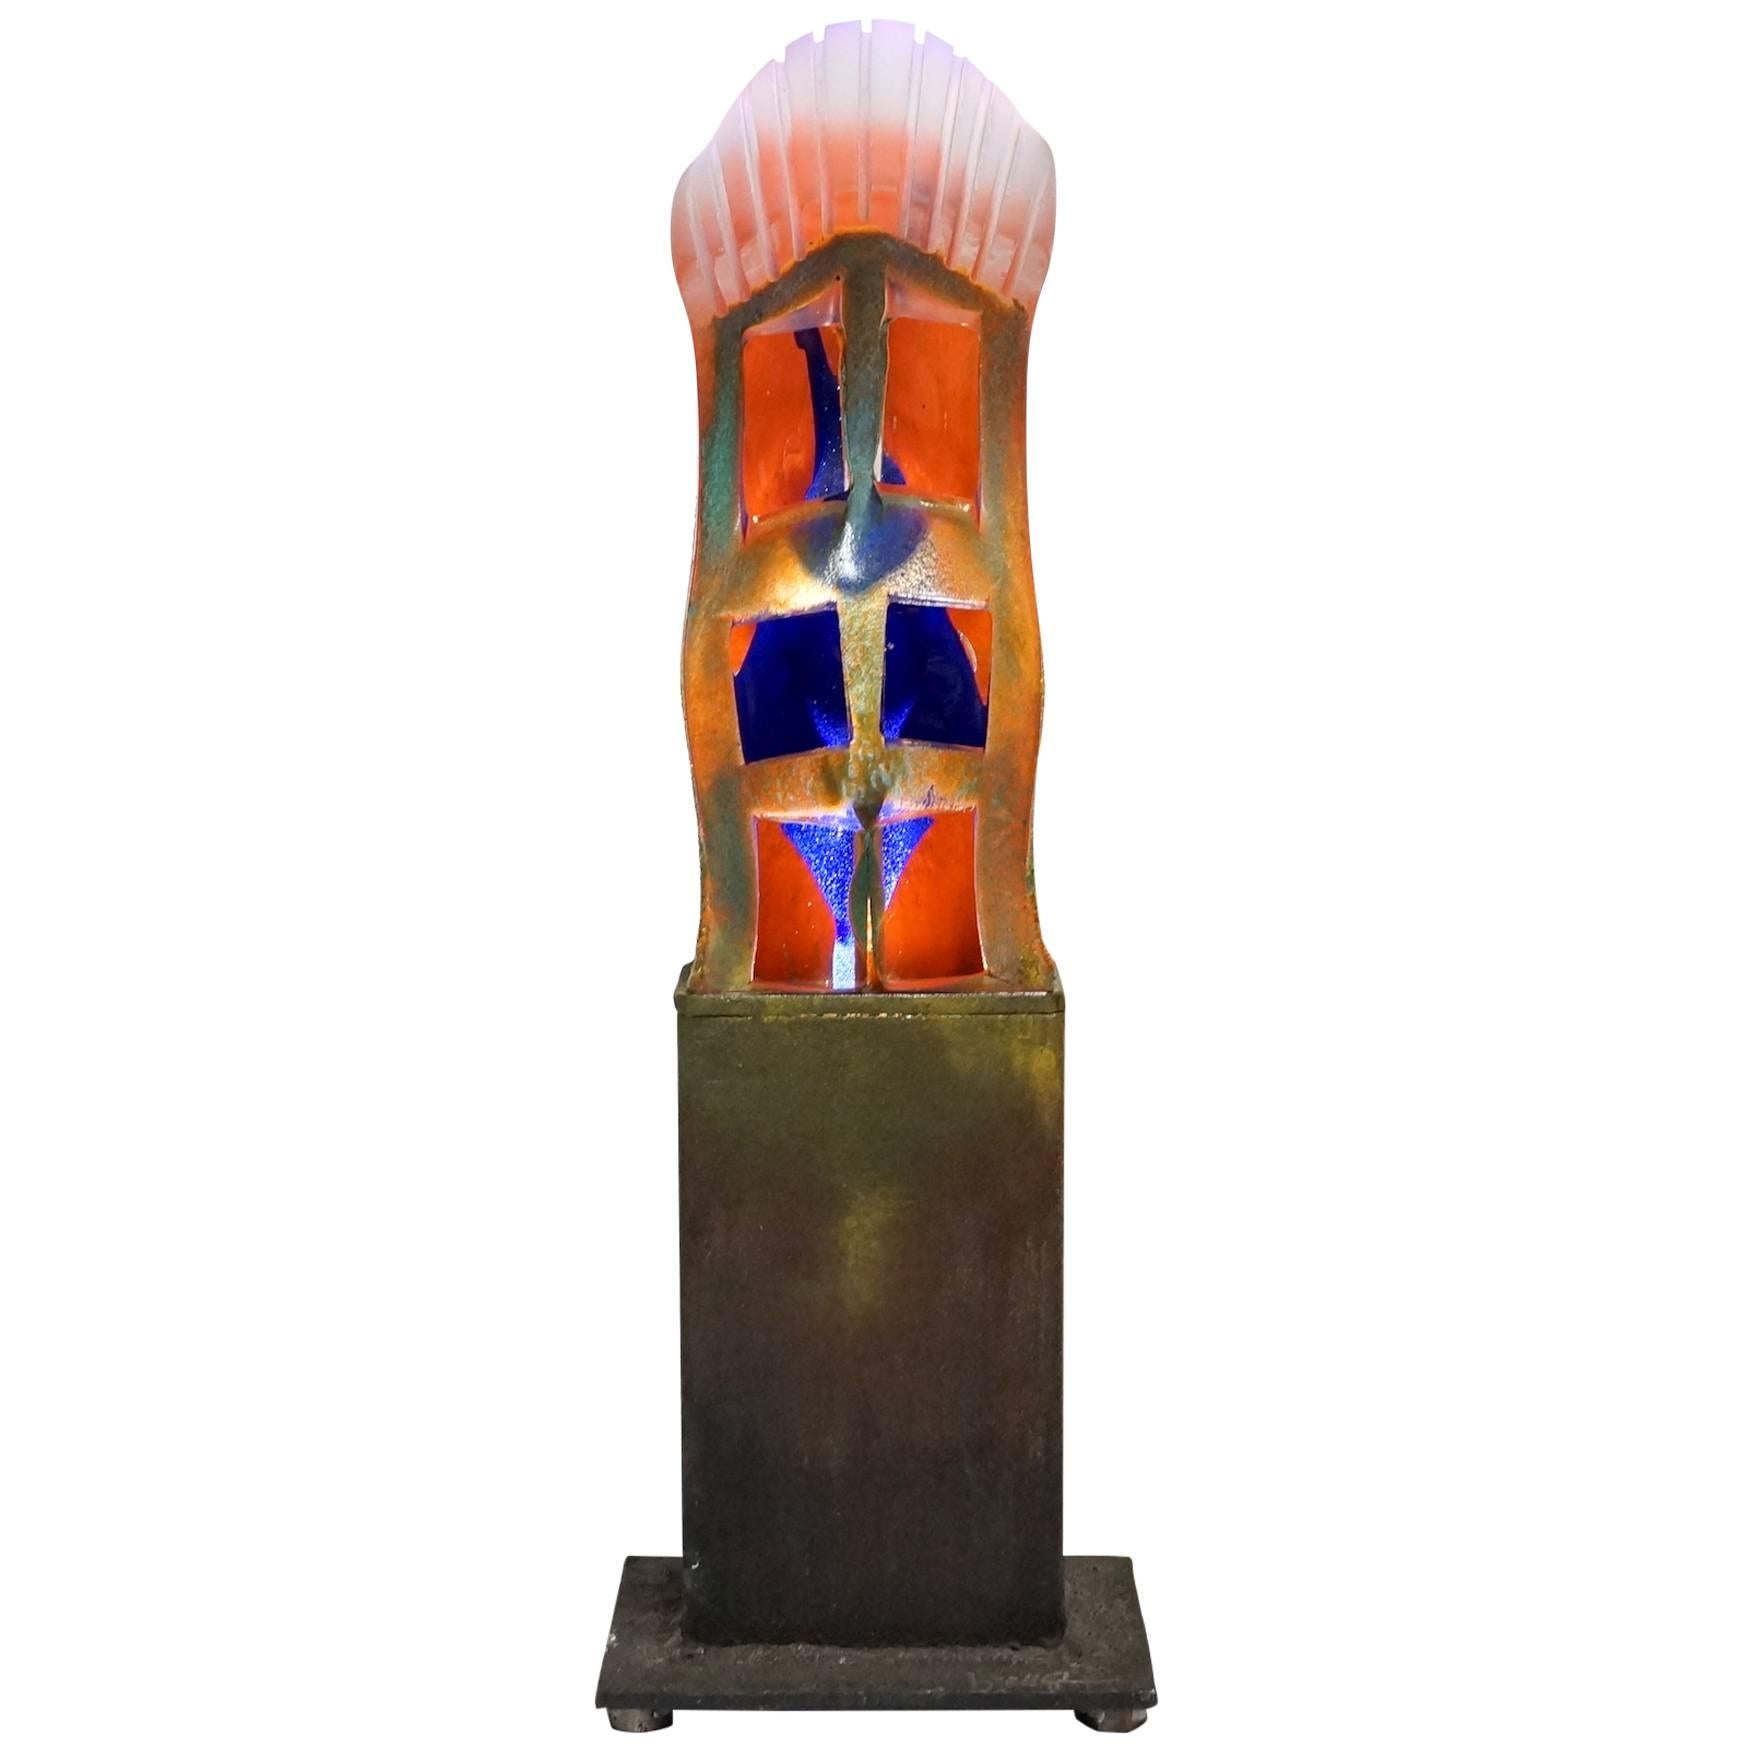 Swedish Art Glass and Light Sculpture by Kjell Engman for Kosta Boda For Sale